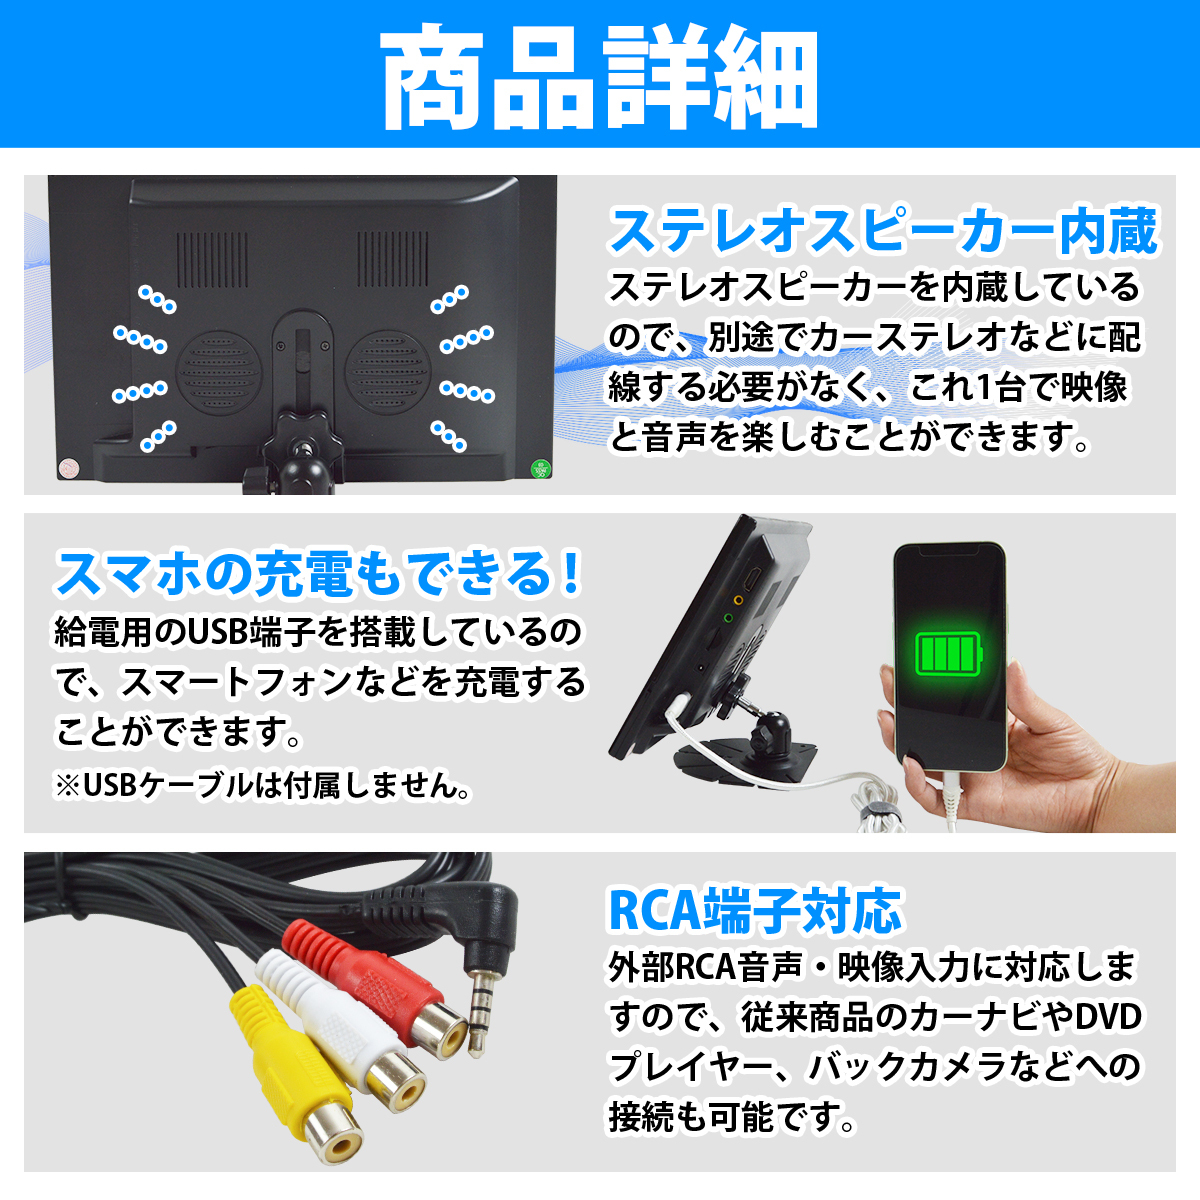 12V オンダッシュモニター 10.1インチ 10.1inch HDMI入力 置き型 ダッシュボード RCA端子 USB端子 シガーソケット電源_画像5